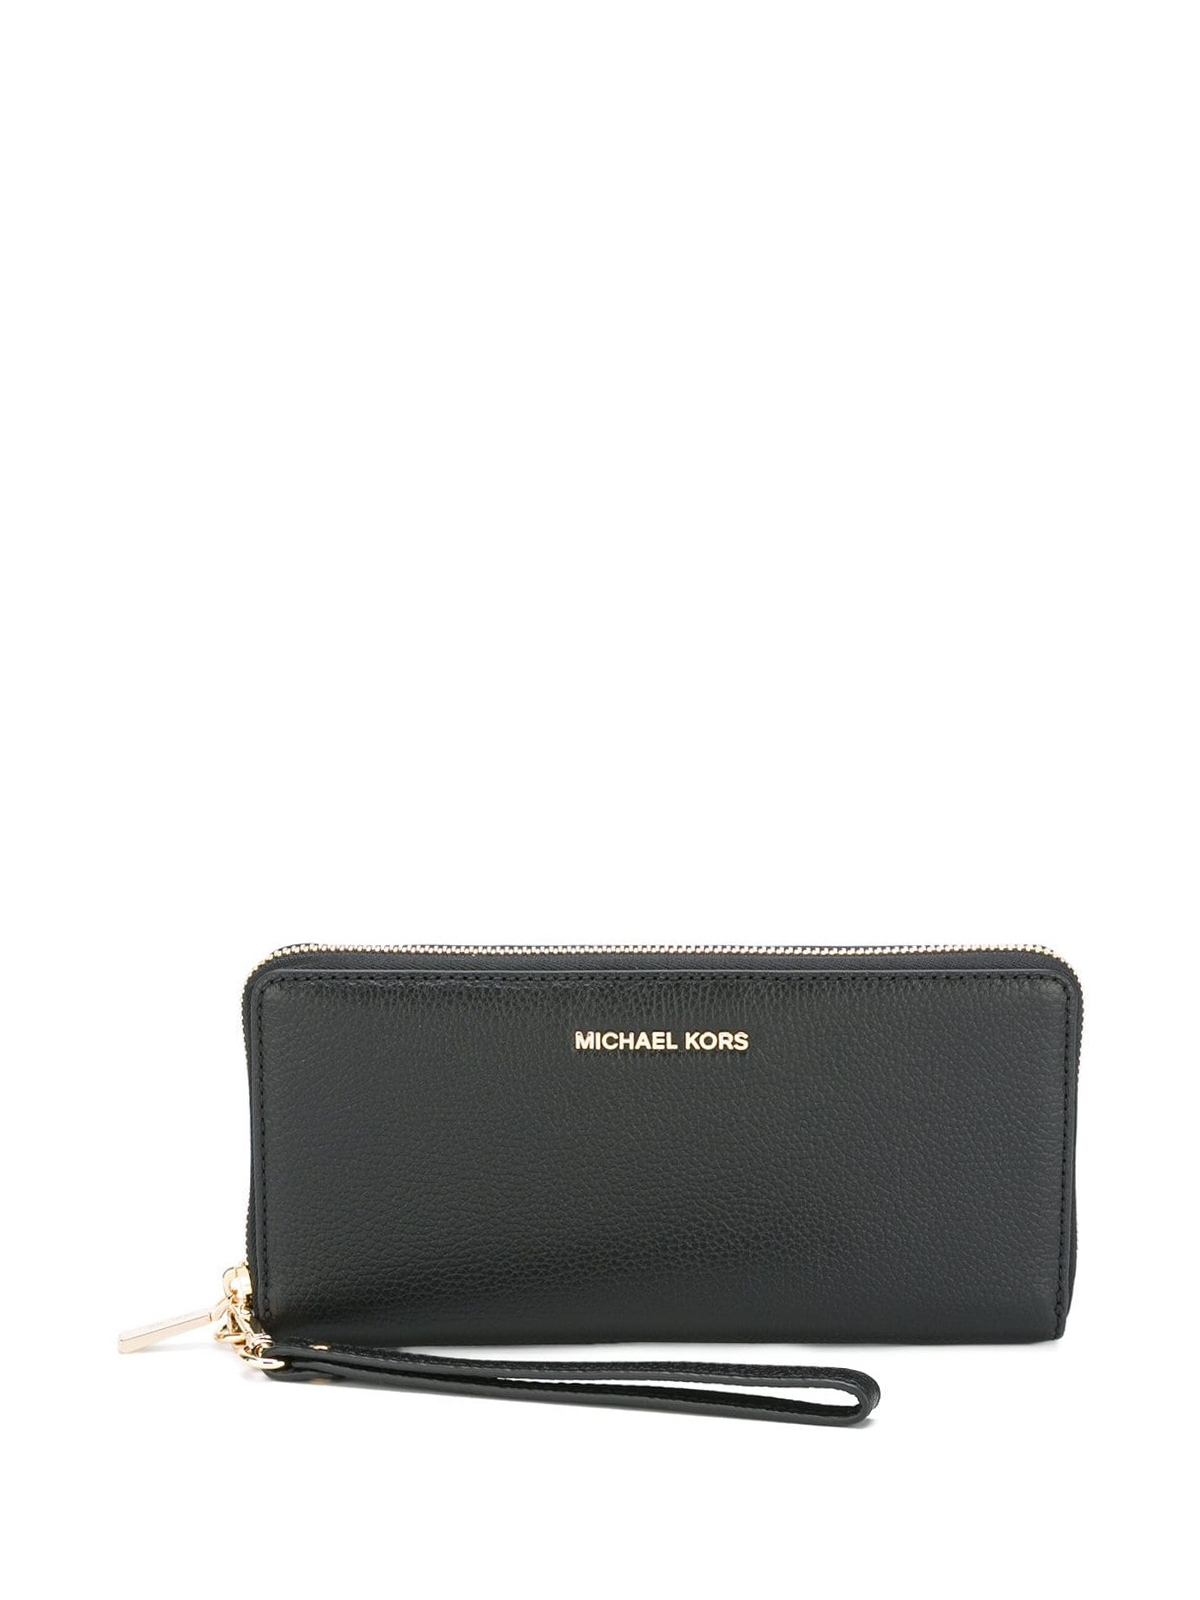 Mercer black hammered leather wallet 